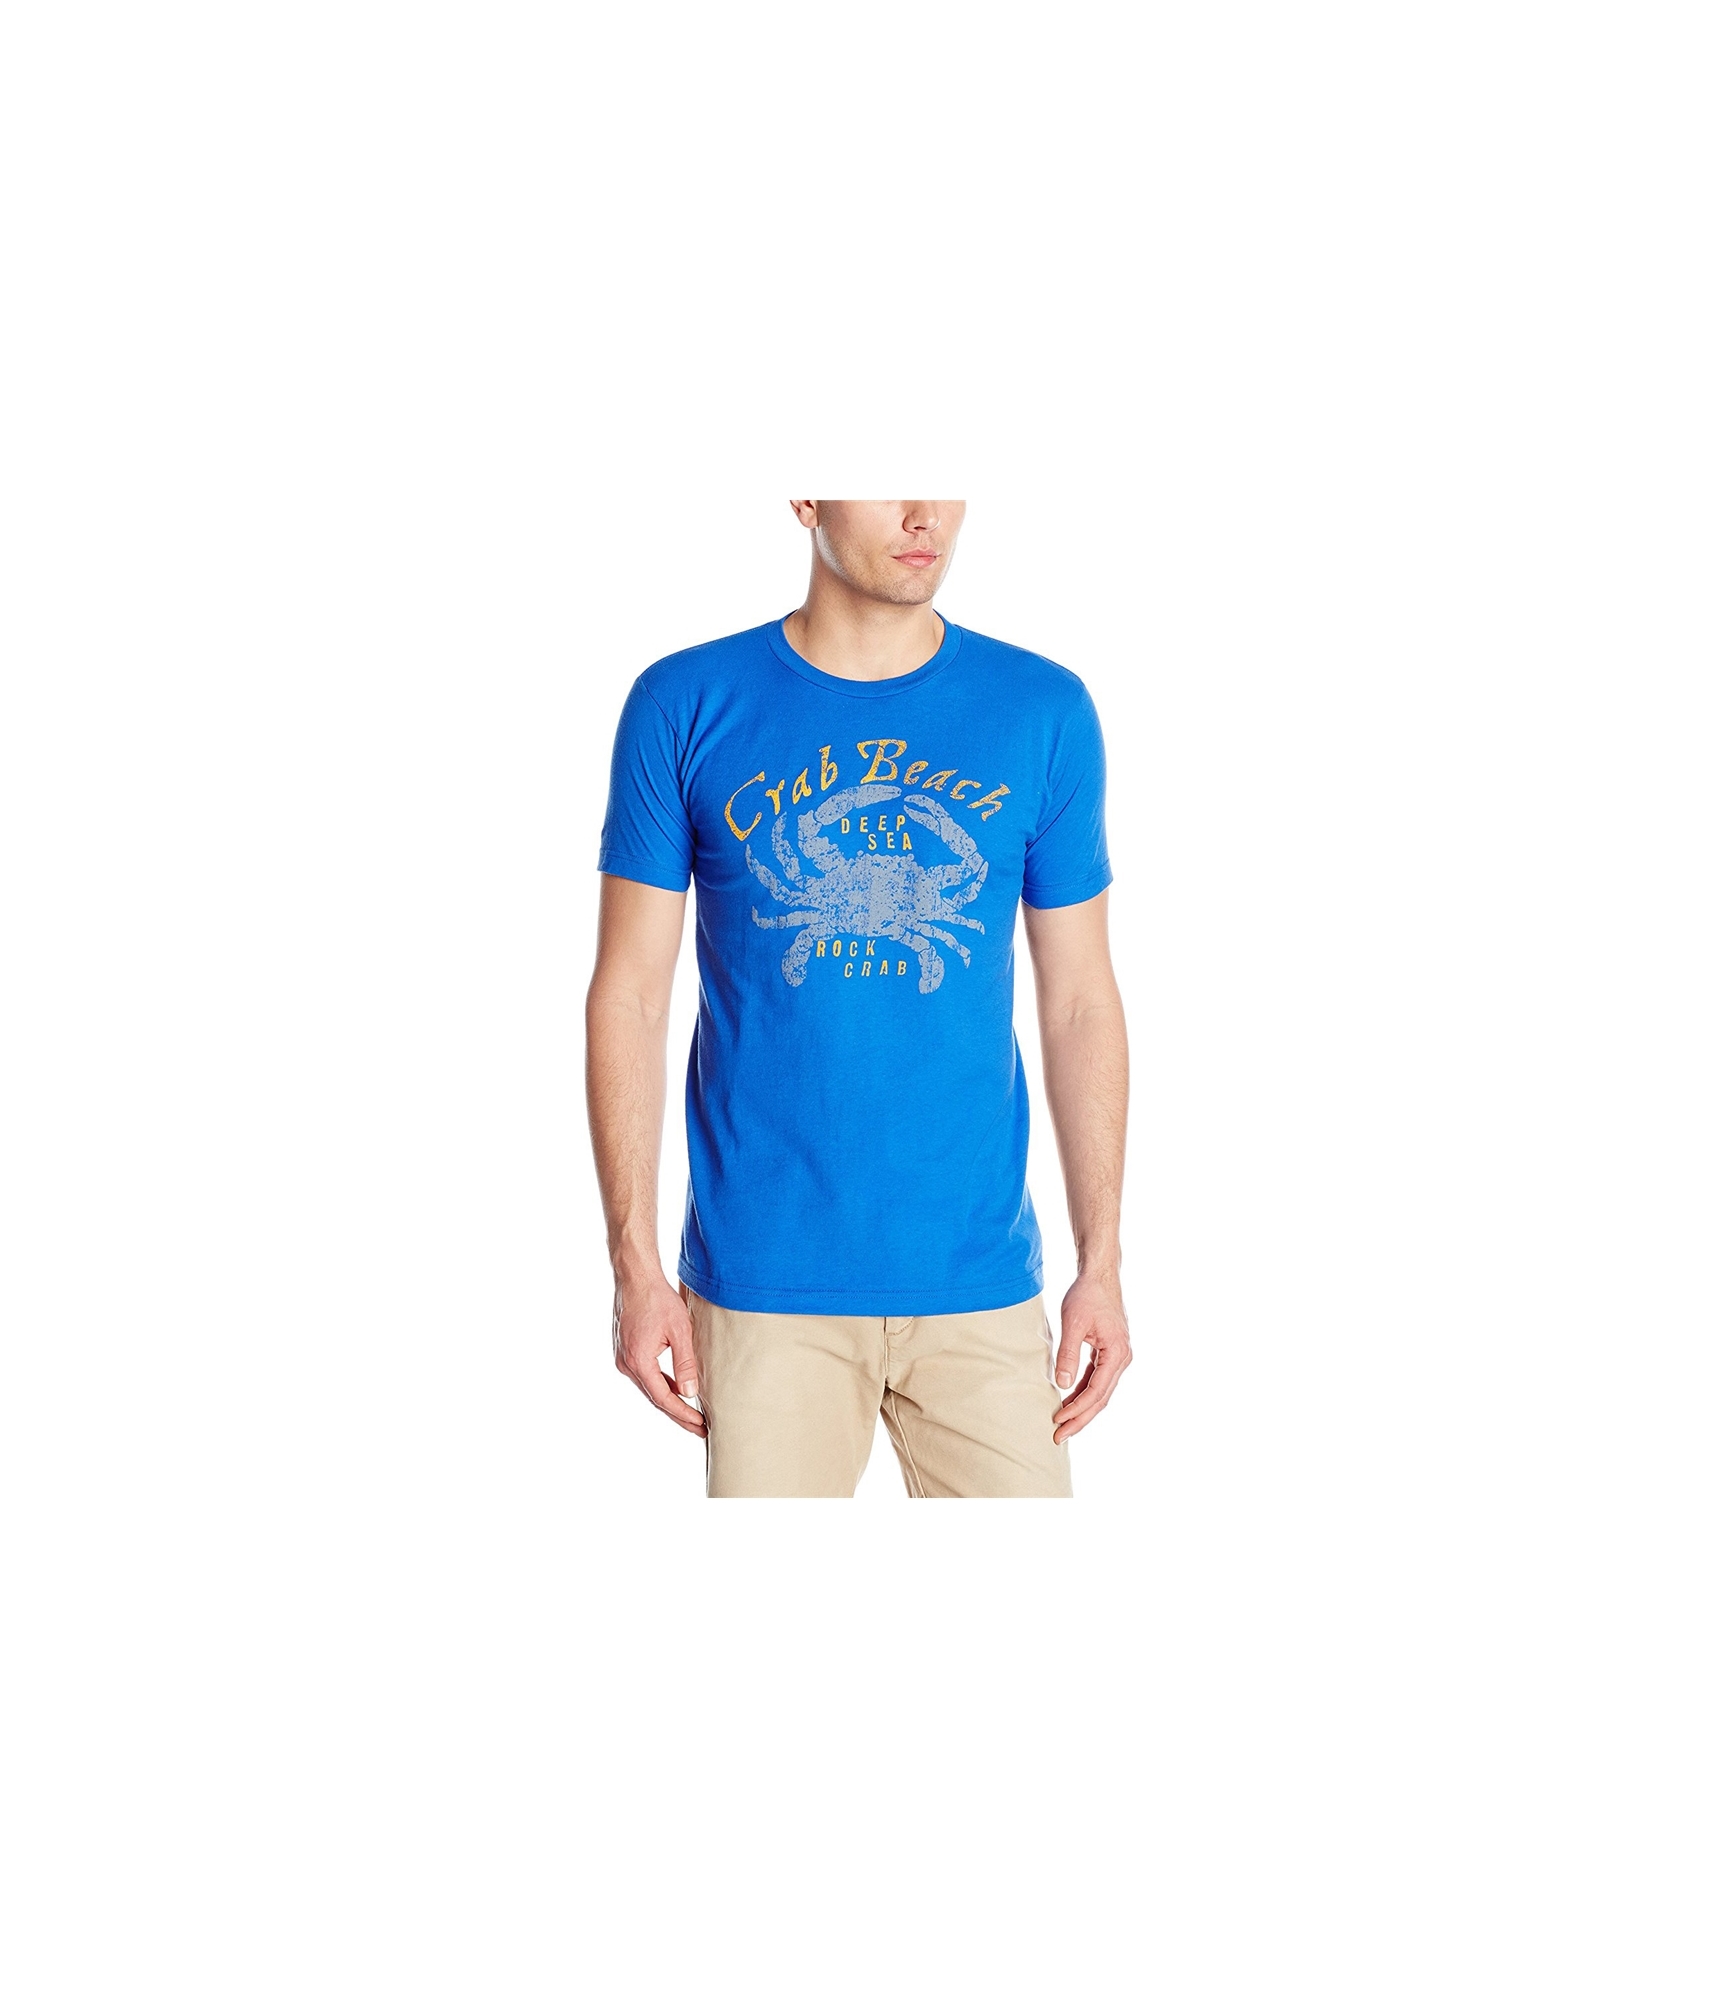 G.H. Bass & Co. Mens Crab Beach Graphic T-Shirt, Blue, Small